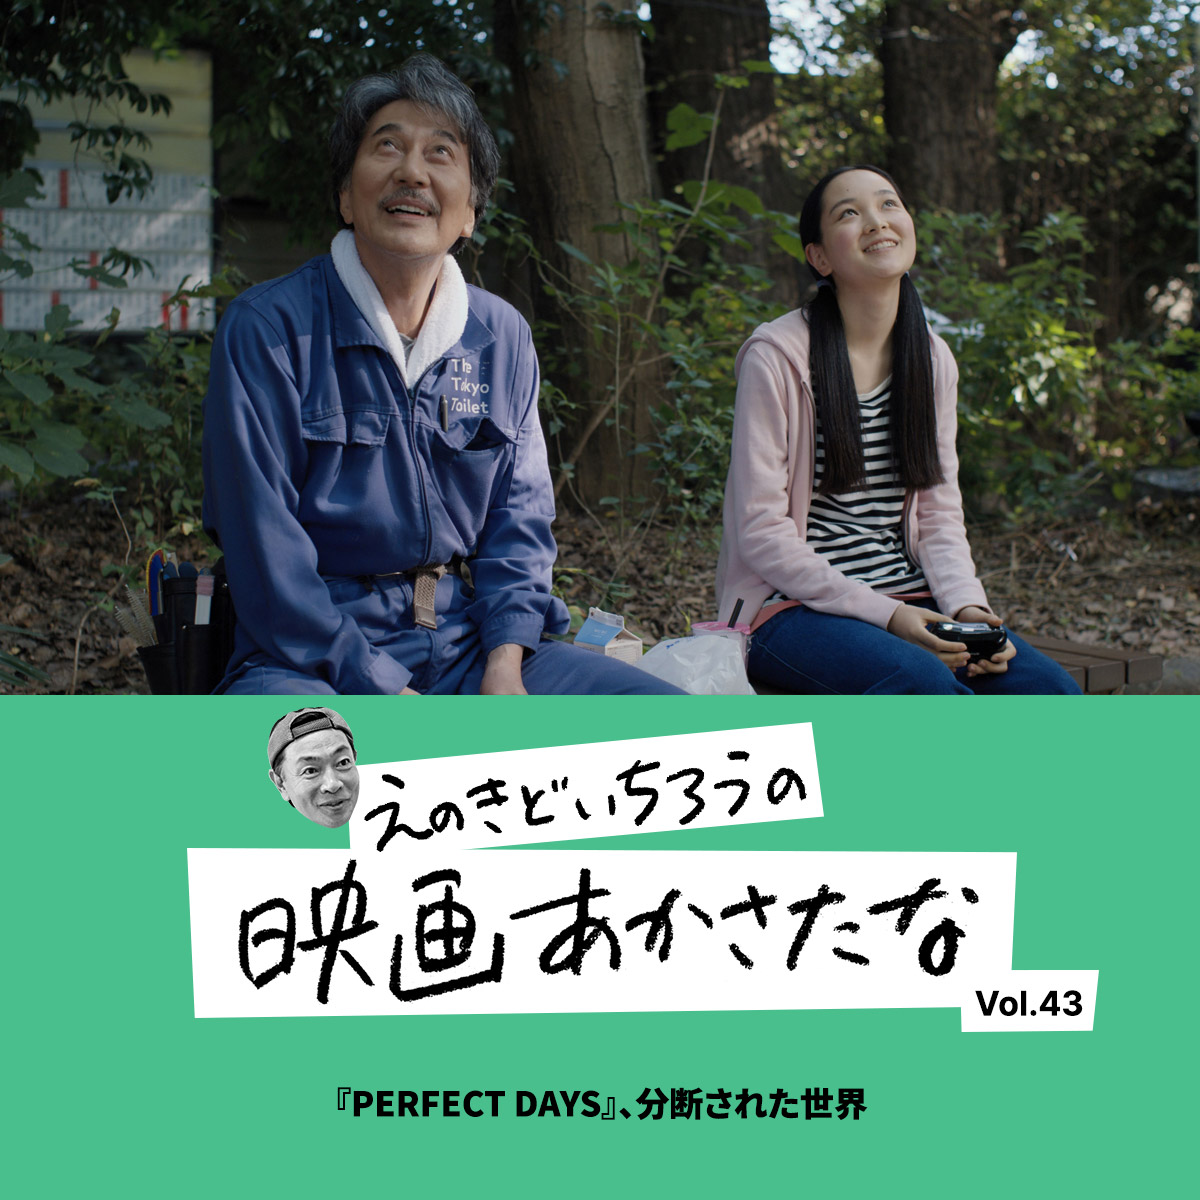 『PERFECT DAYS』、分断された世界【えのきどいちろうの映画あかさたな Vol.43】